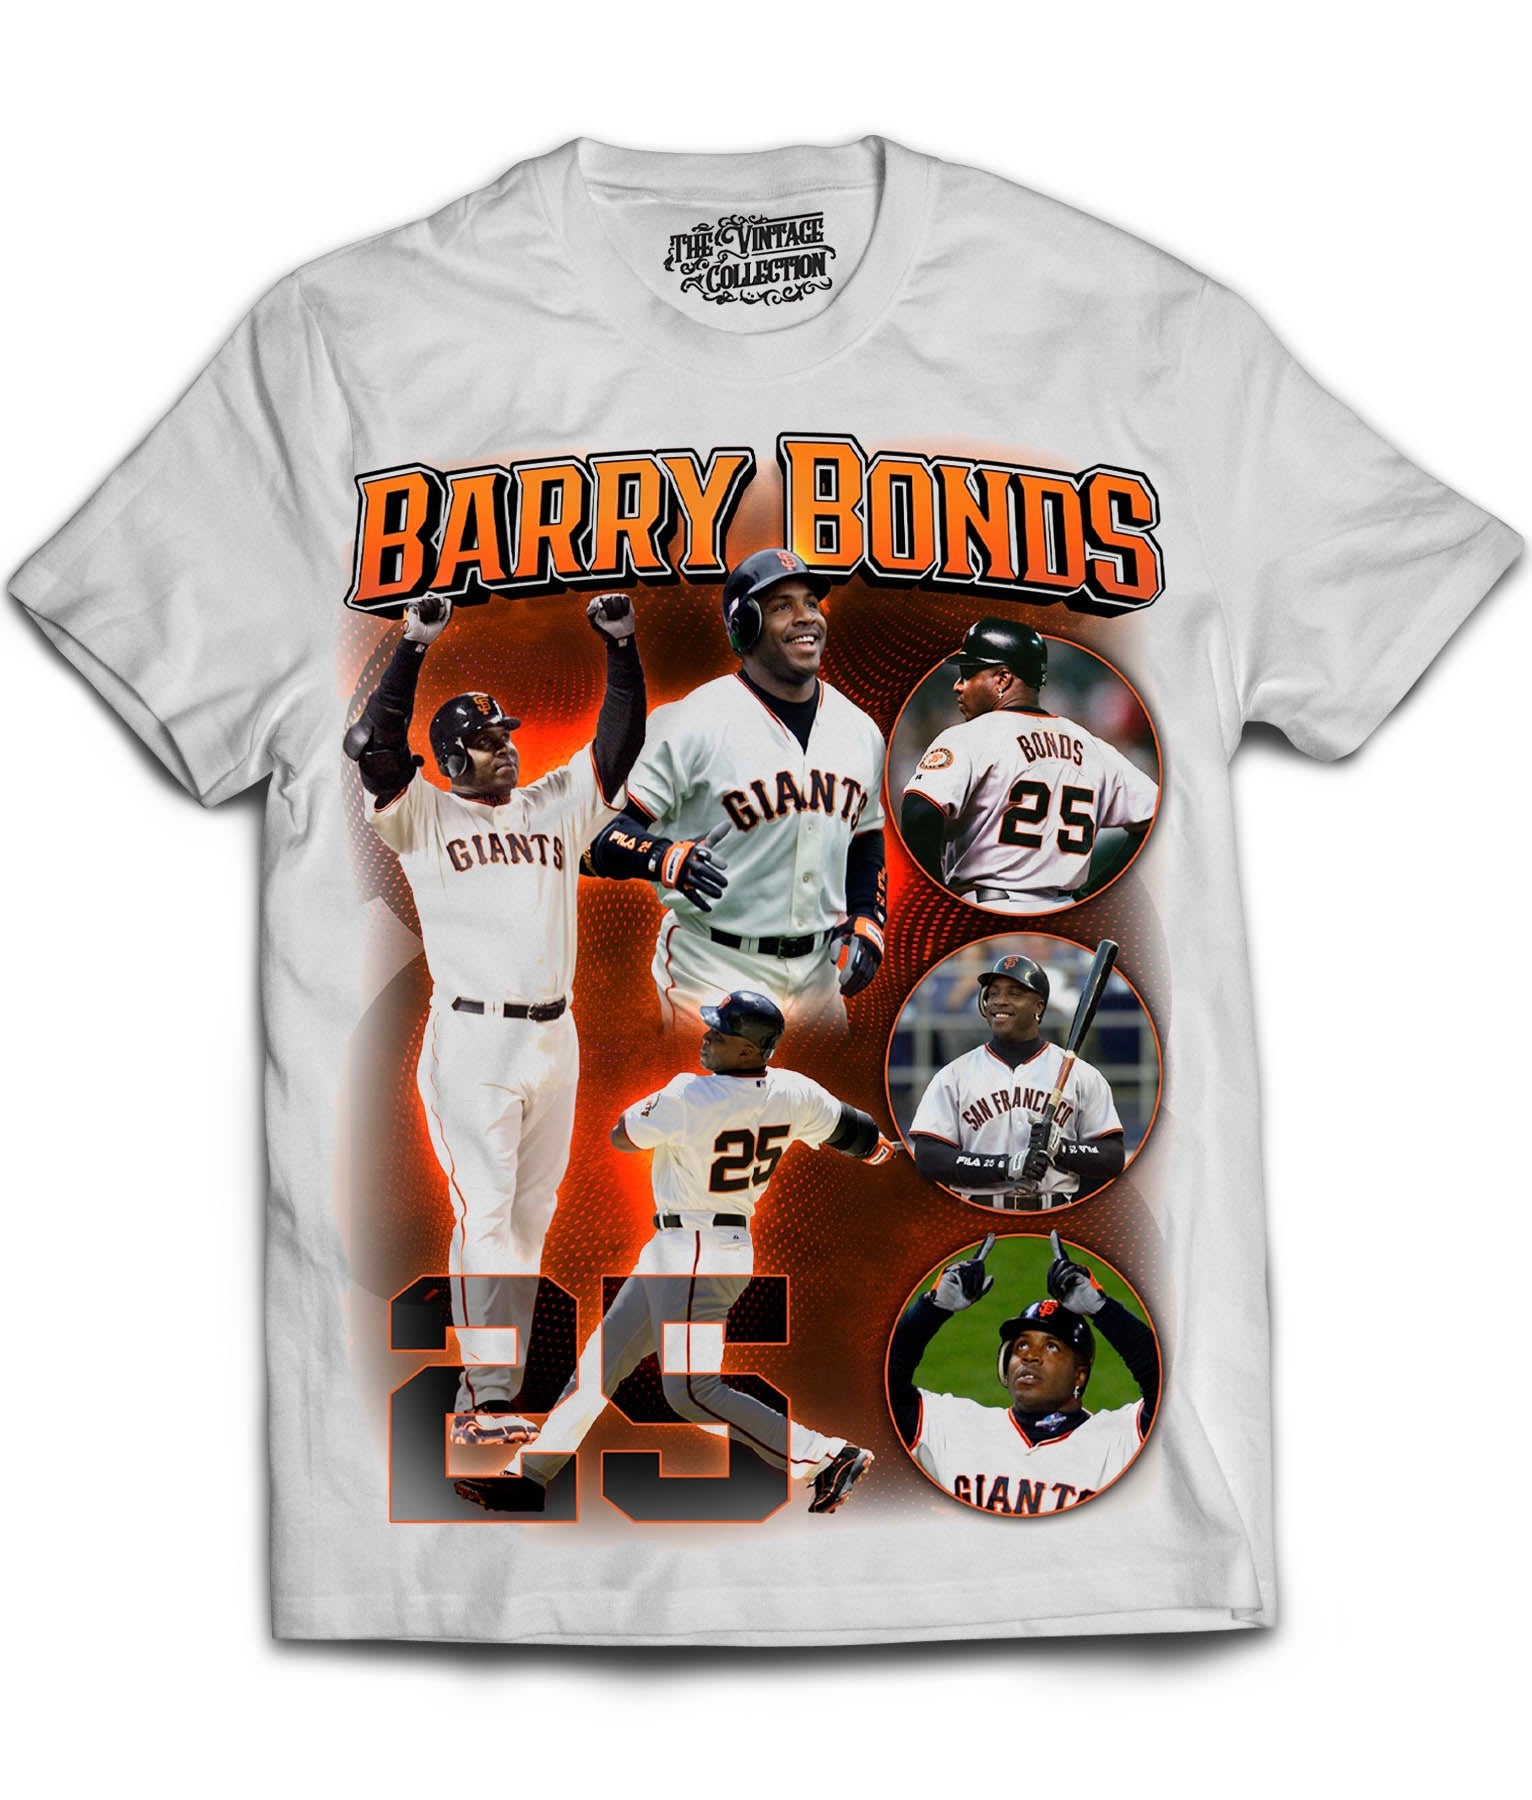 barry bonds jersey shirt